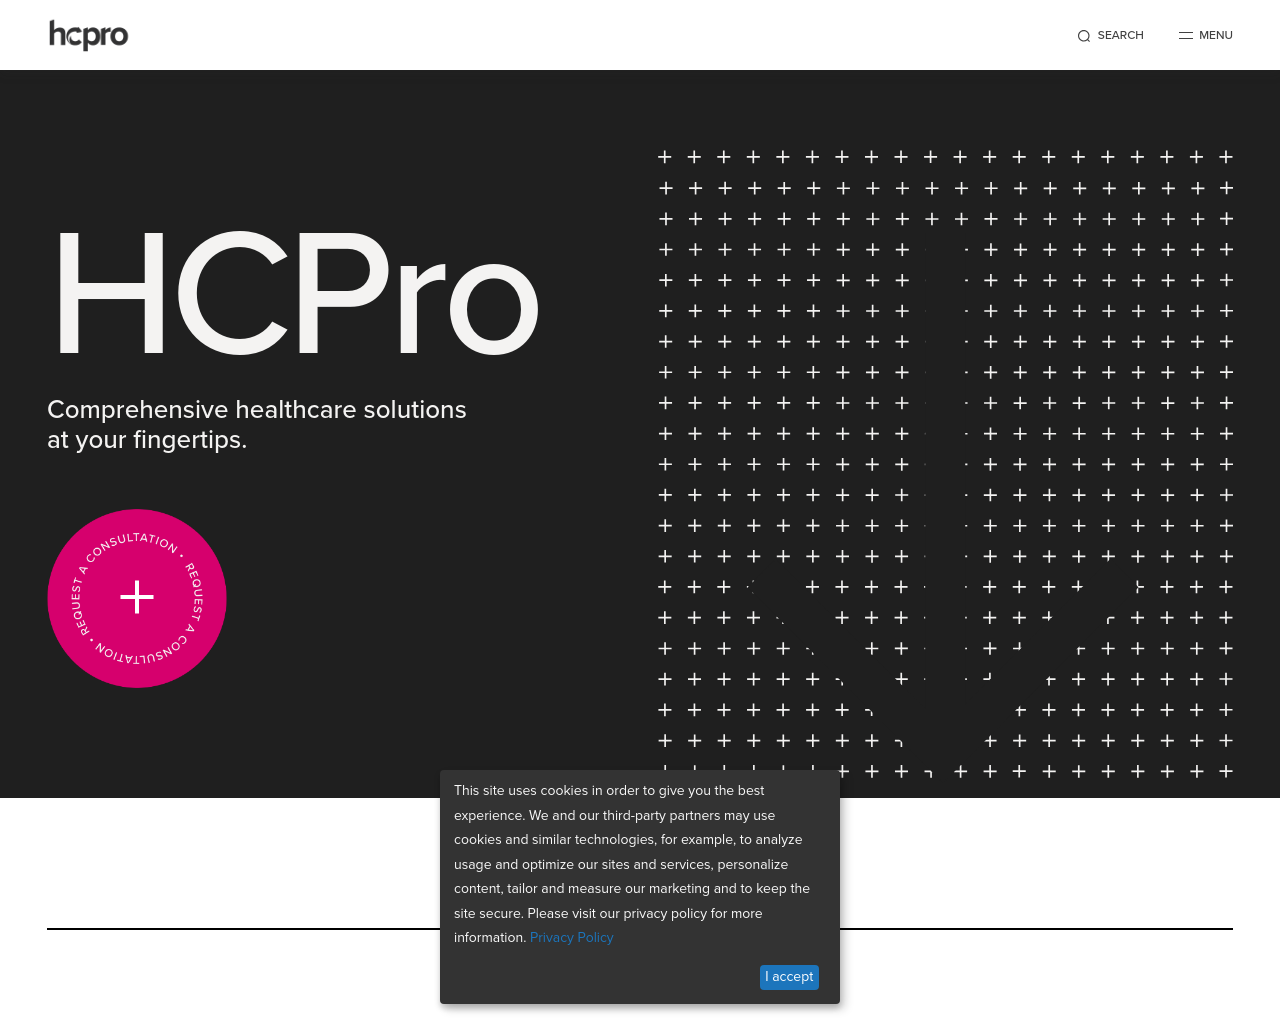 hcpro.com